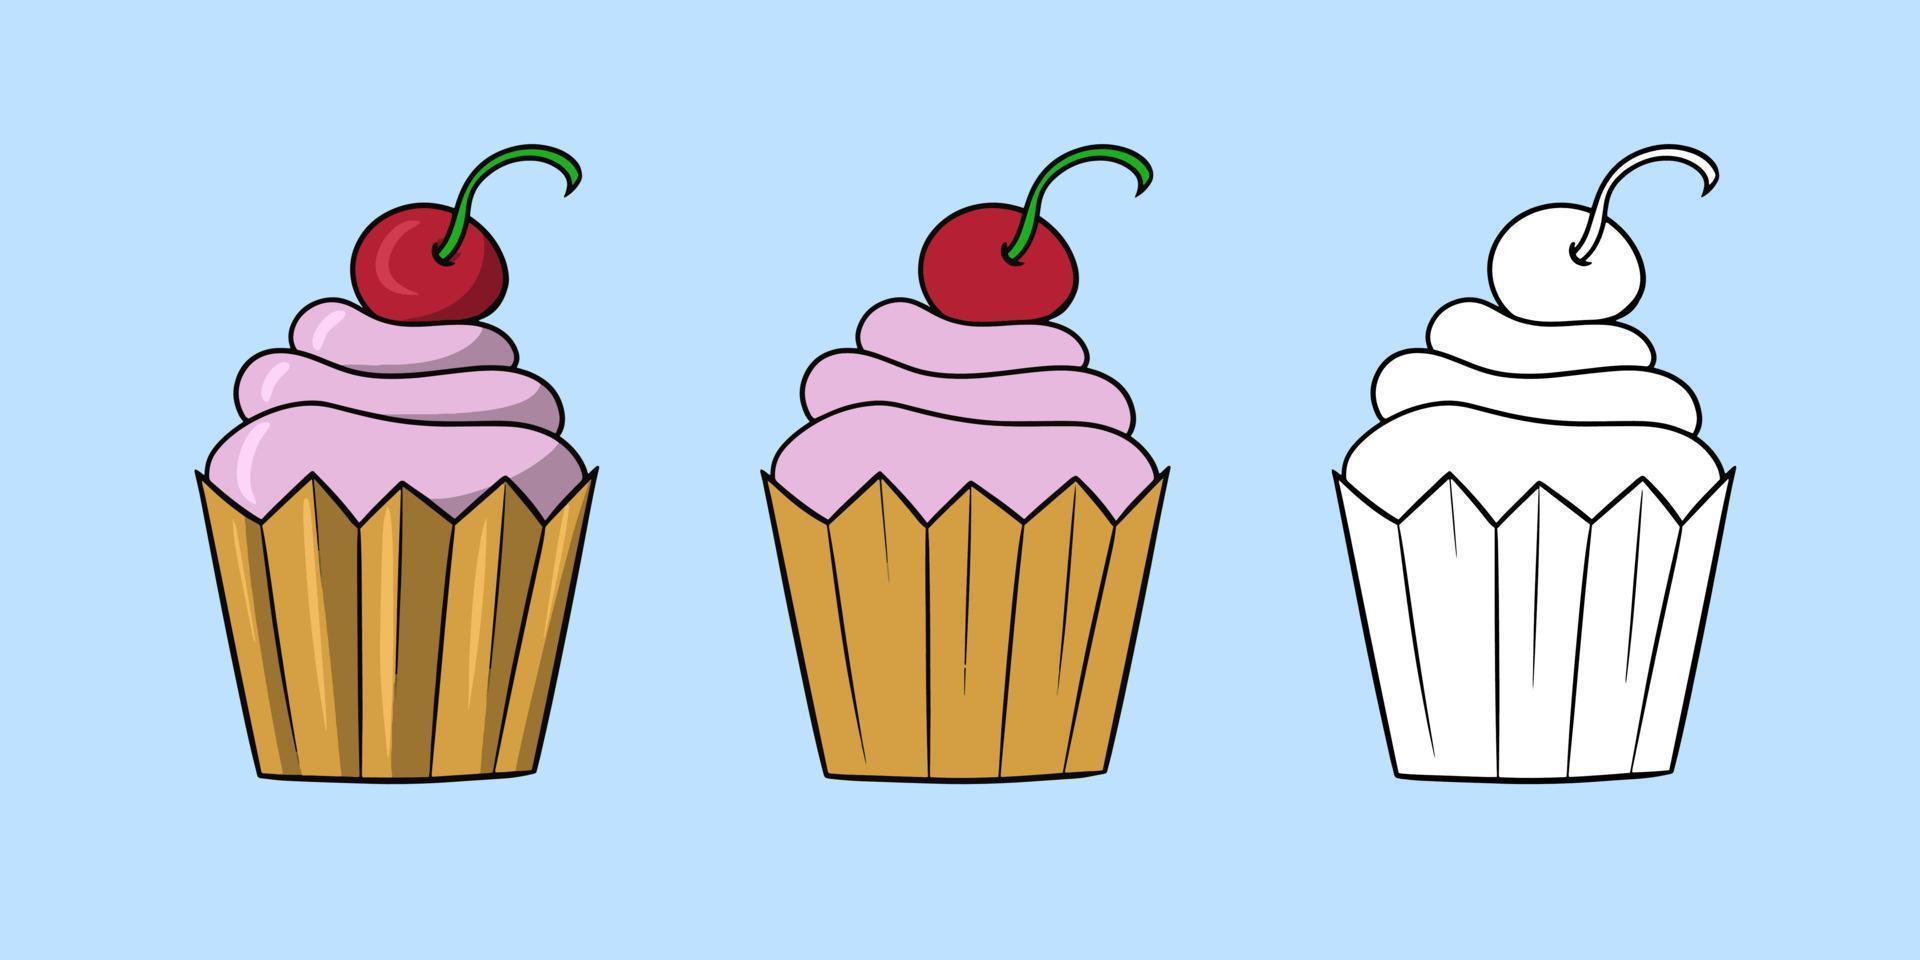 ensemble horizontal d'images, délicieux cupcake à la crème délicate et aux baies de cerise, illustration vectorielle en style cartoon sur fond coloré vecteur